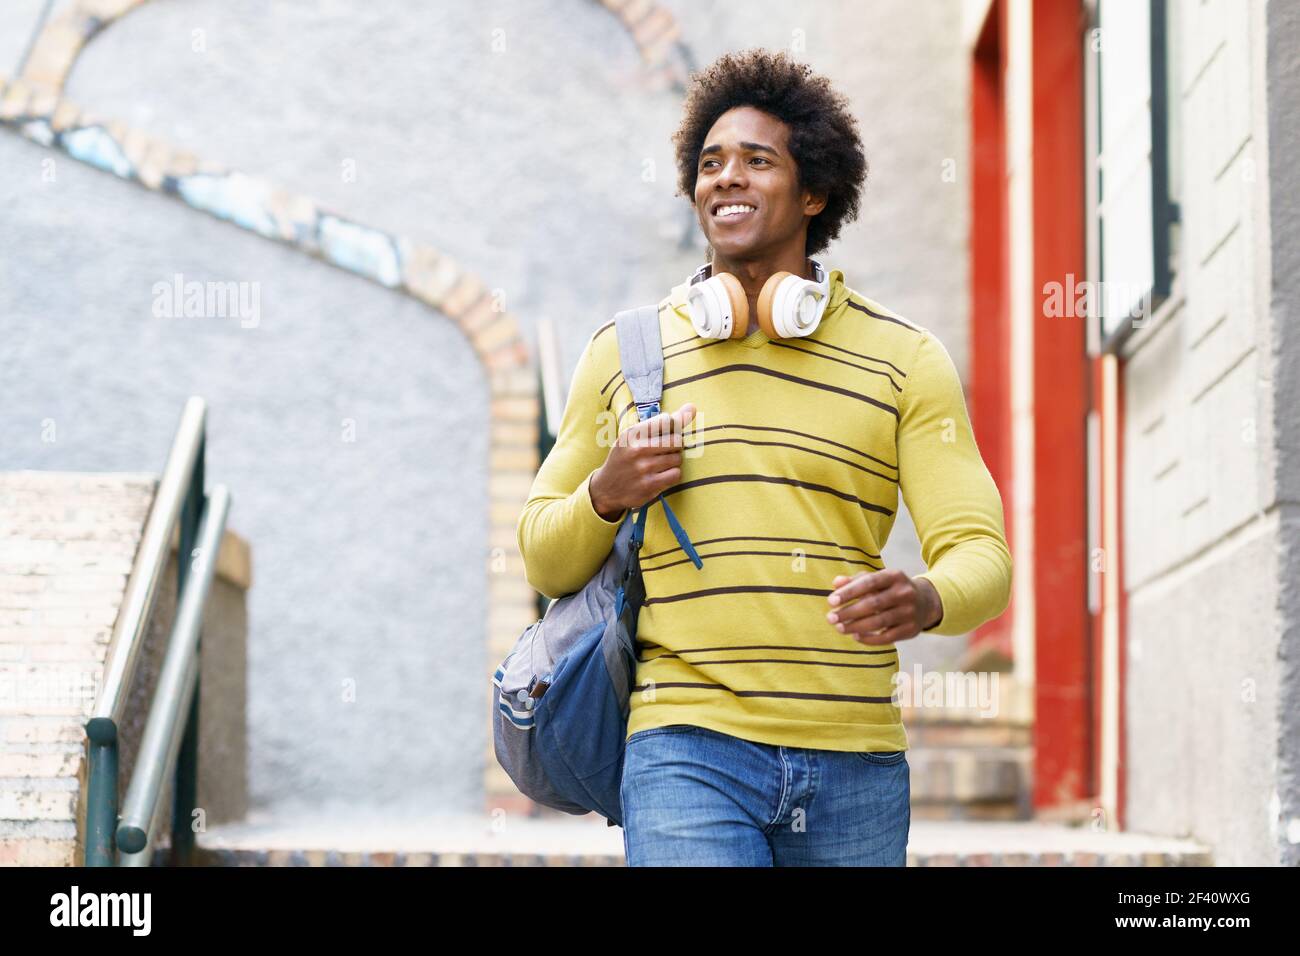 Homme noir cubain avec des cheveux afro à Grenade, Andalousie, Espagne. Homme noir avec des cheveux afro à Grenade Banque D'Images